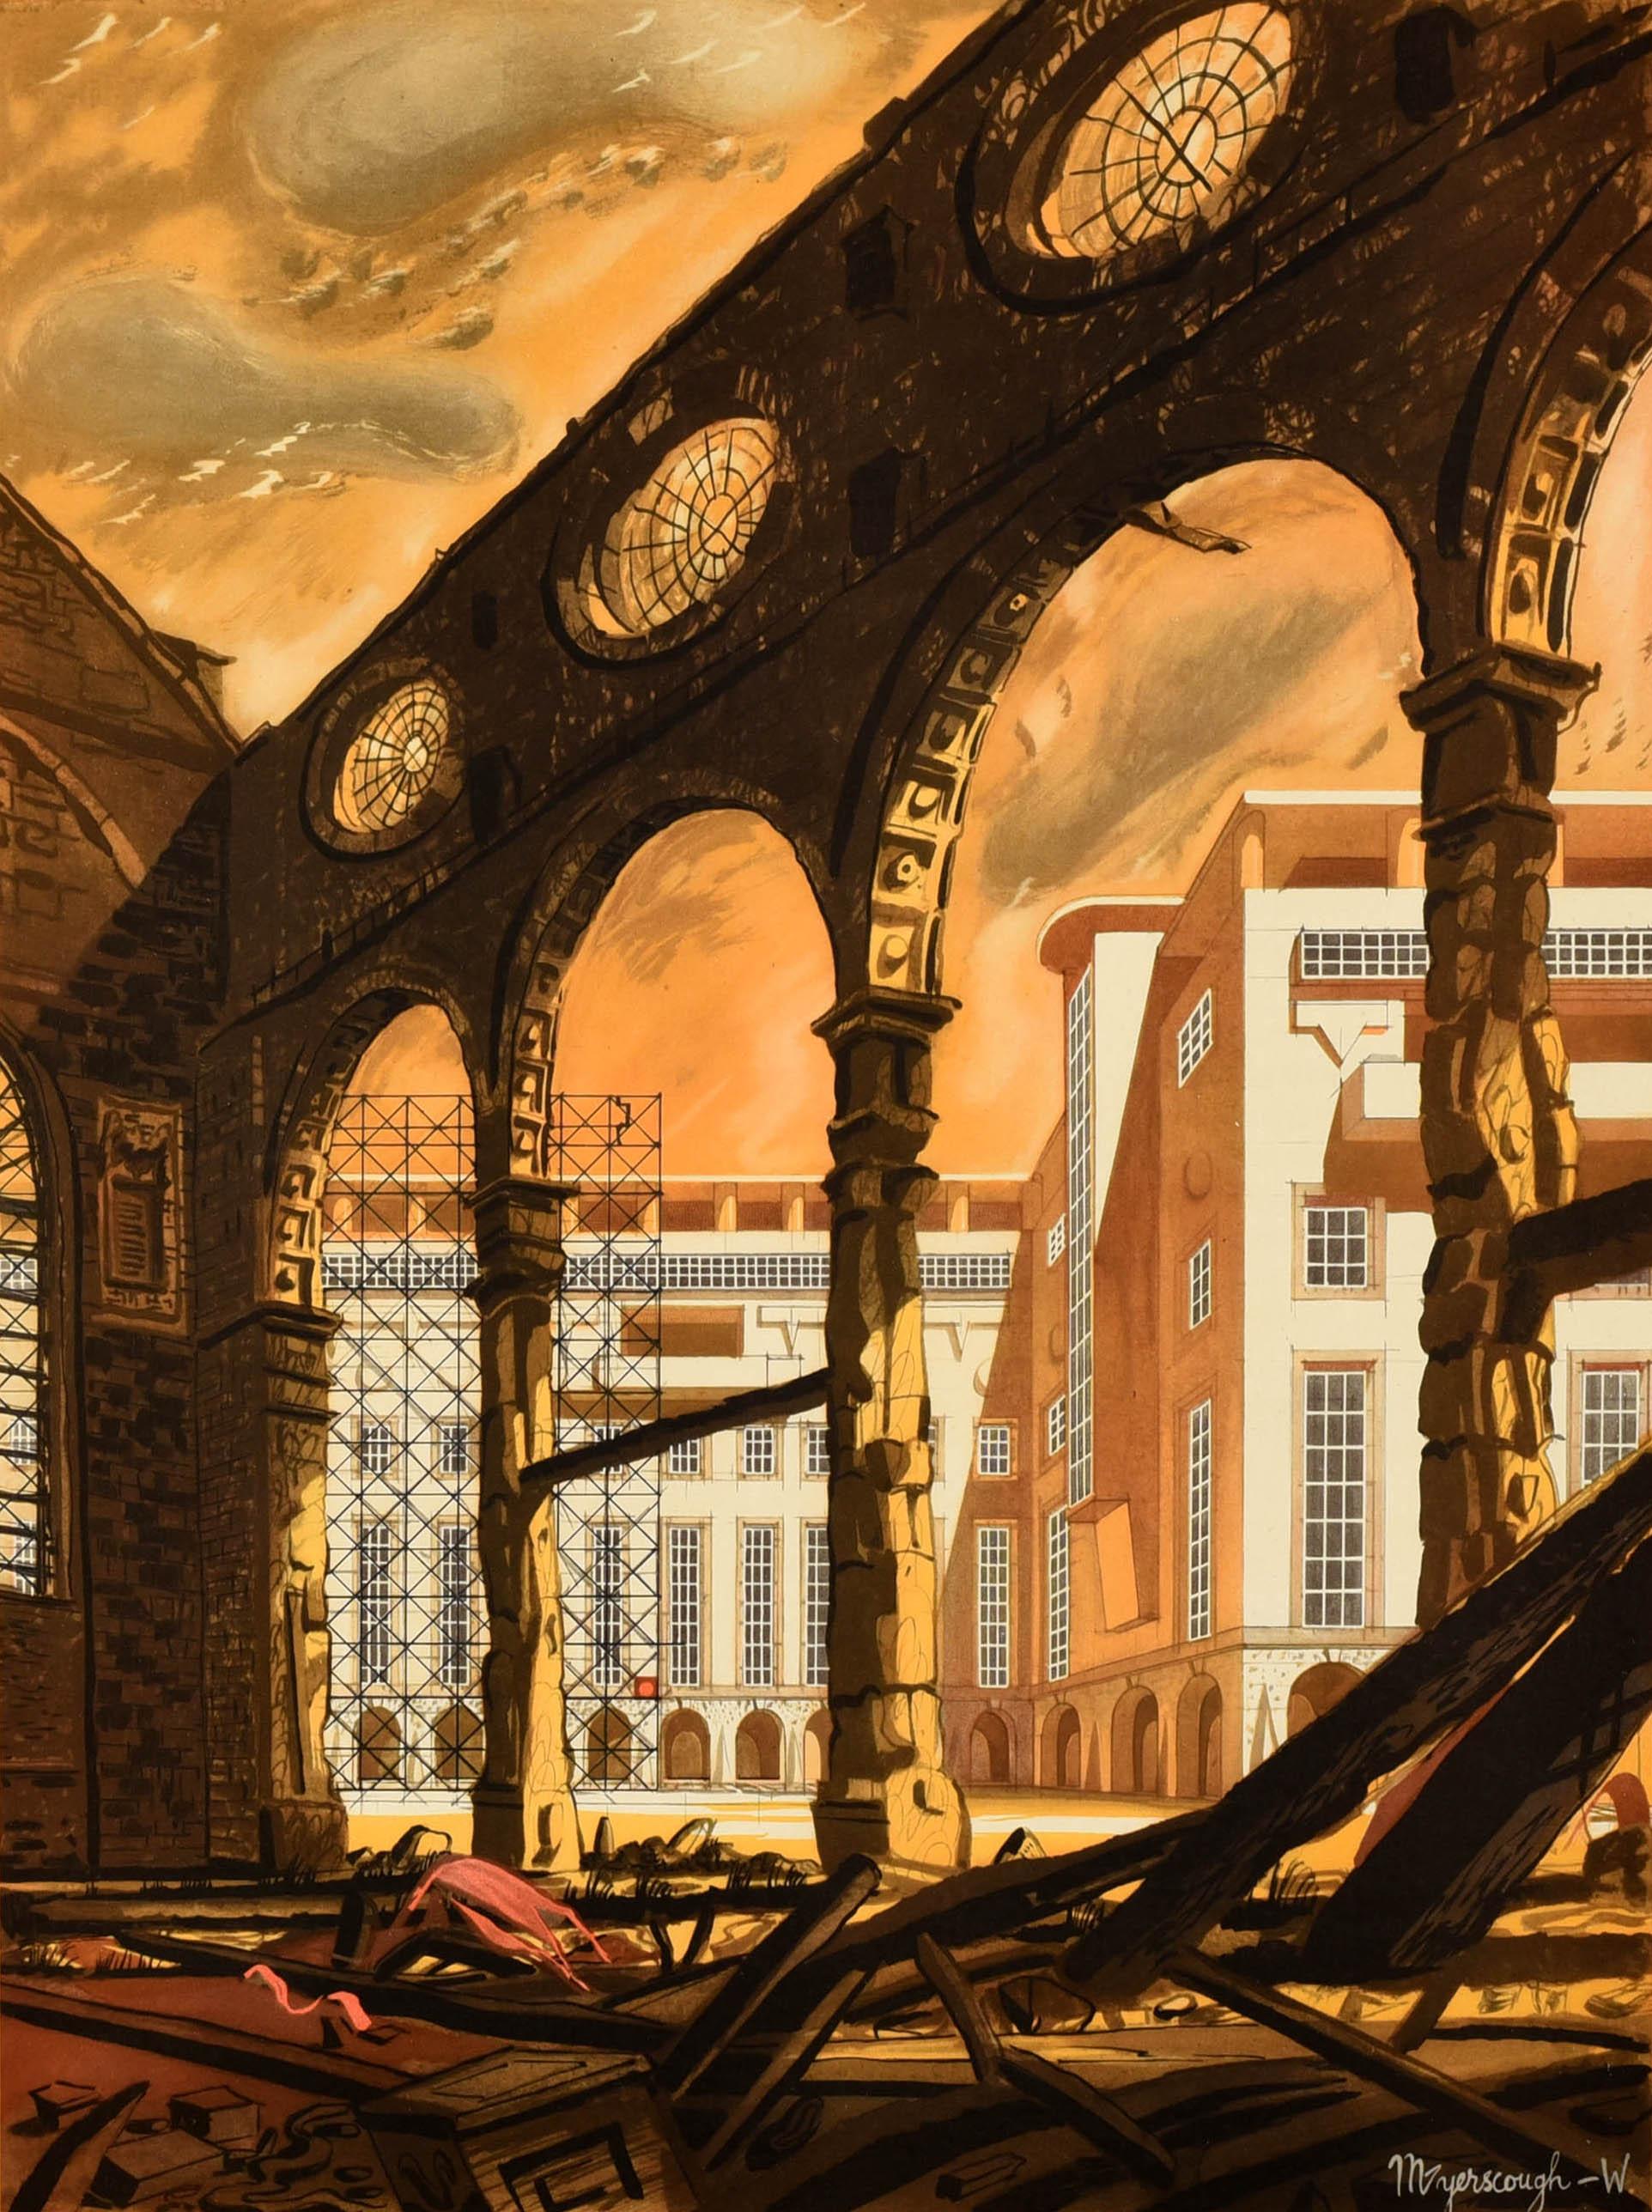 Affiche originale de la Seconde Guerre mondiale - Construire pour la prospérité ... Save Now - représentant une vieille église en ruines avec des échafaudages et de nouveaux bâtiments visibles à travers les piliers restants sous un ciel orange